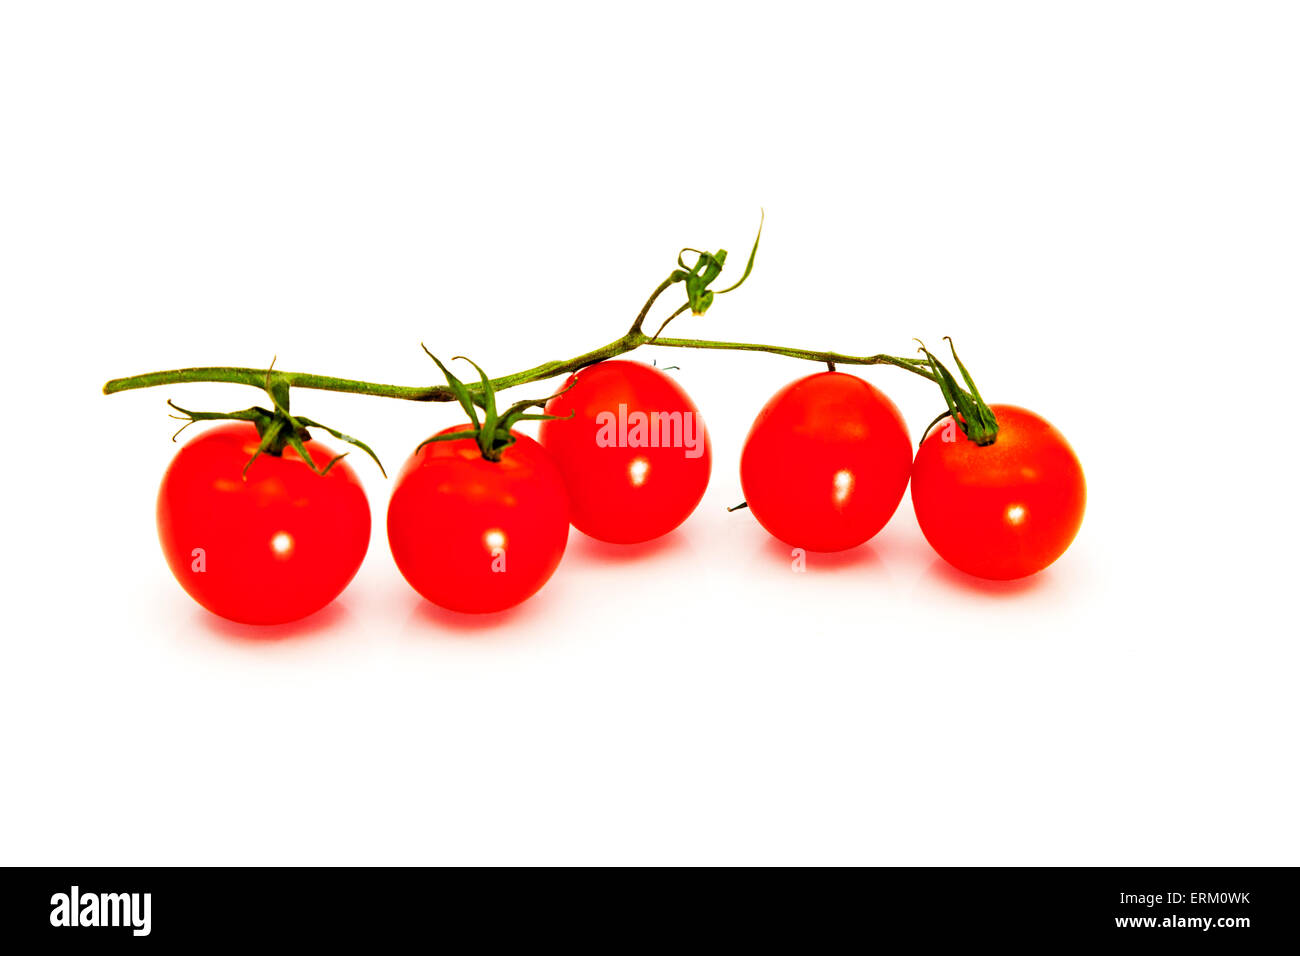 Pomodorini con stelo vite cibo fresco sana opzione biologici rosso pomodoro maturo vegetale intaglio isolato tagliare Foto Stock